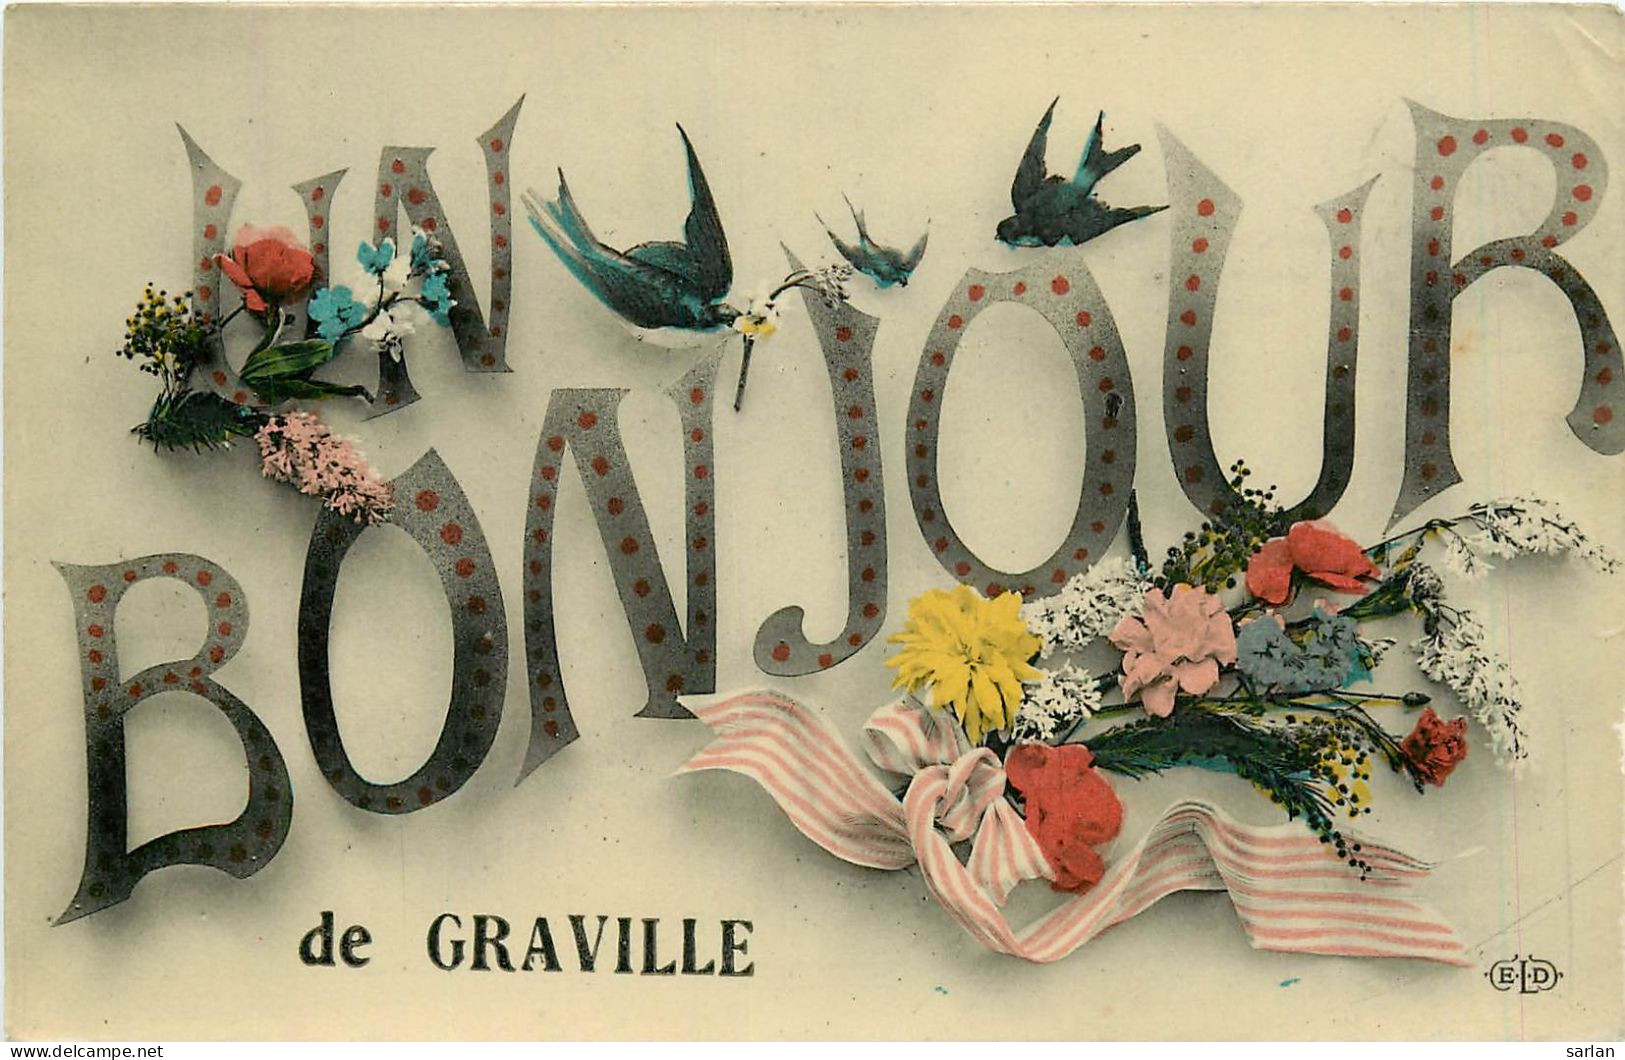 76 , Un Bonjour De GRAVILLE , *  457 42 - Graville